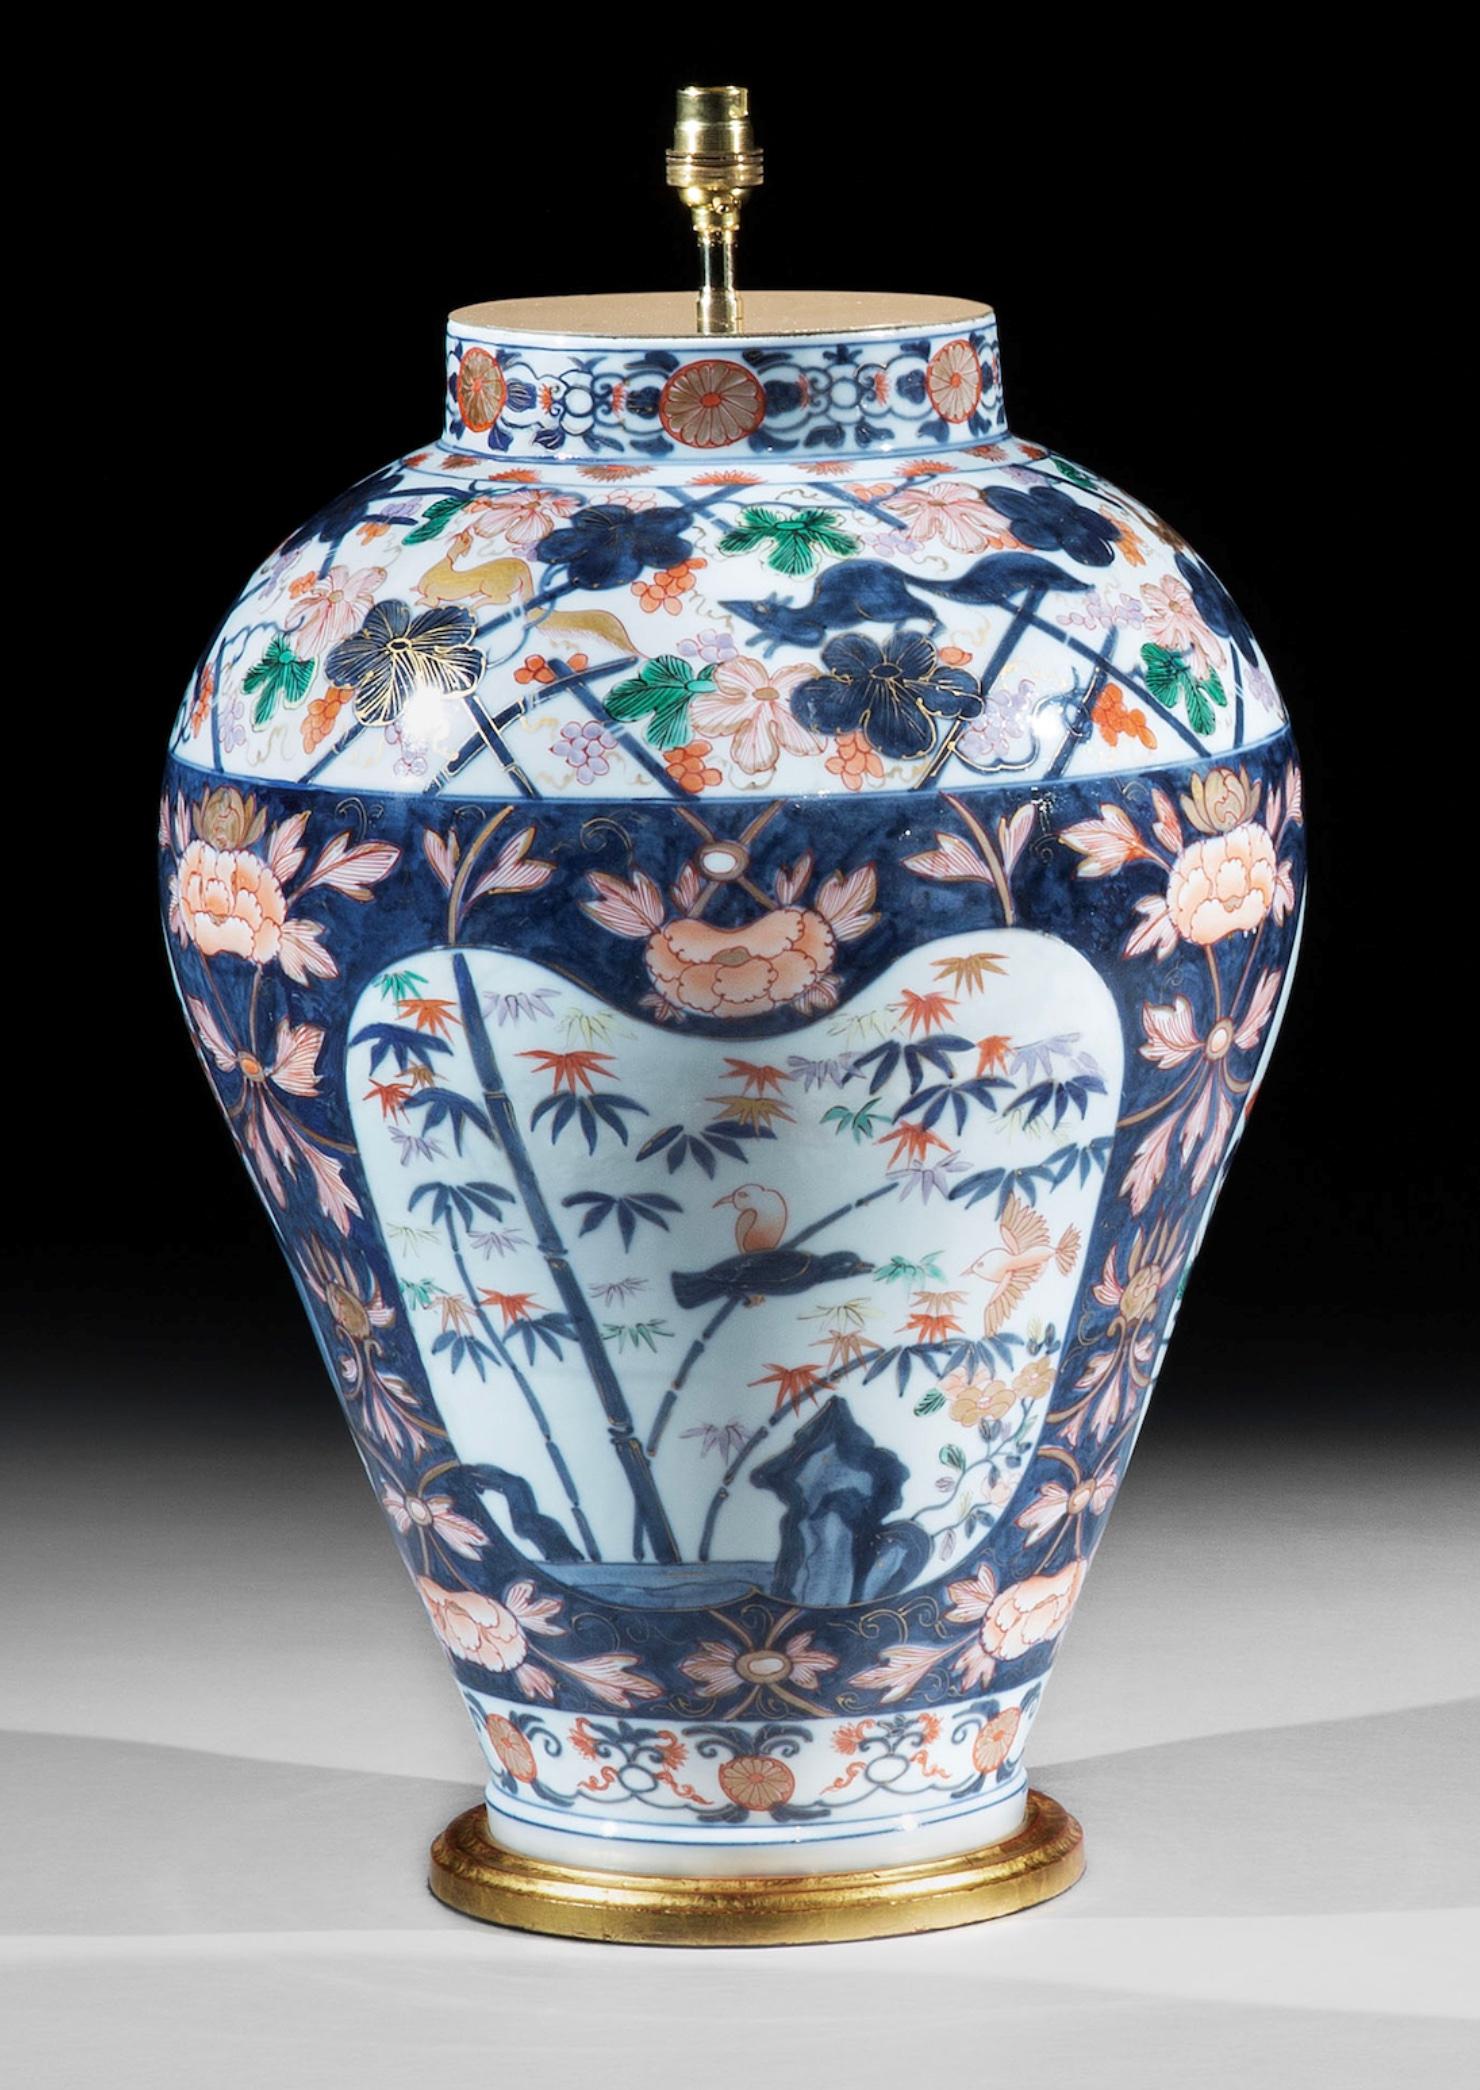 Une superbe paire de grands vases et couvercles en porcelaine continentale du 19ème siècle, probablement Samson. Chaque vase est magnifiquement décoré dans la palette Imari, avec des pavillons sur des rivages rocheux, réservés sur un fond bleu peint